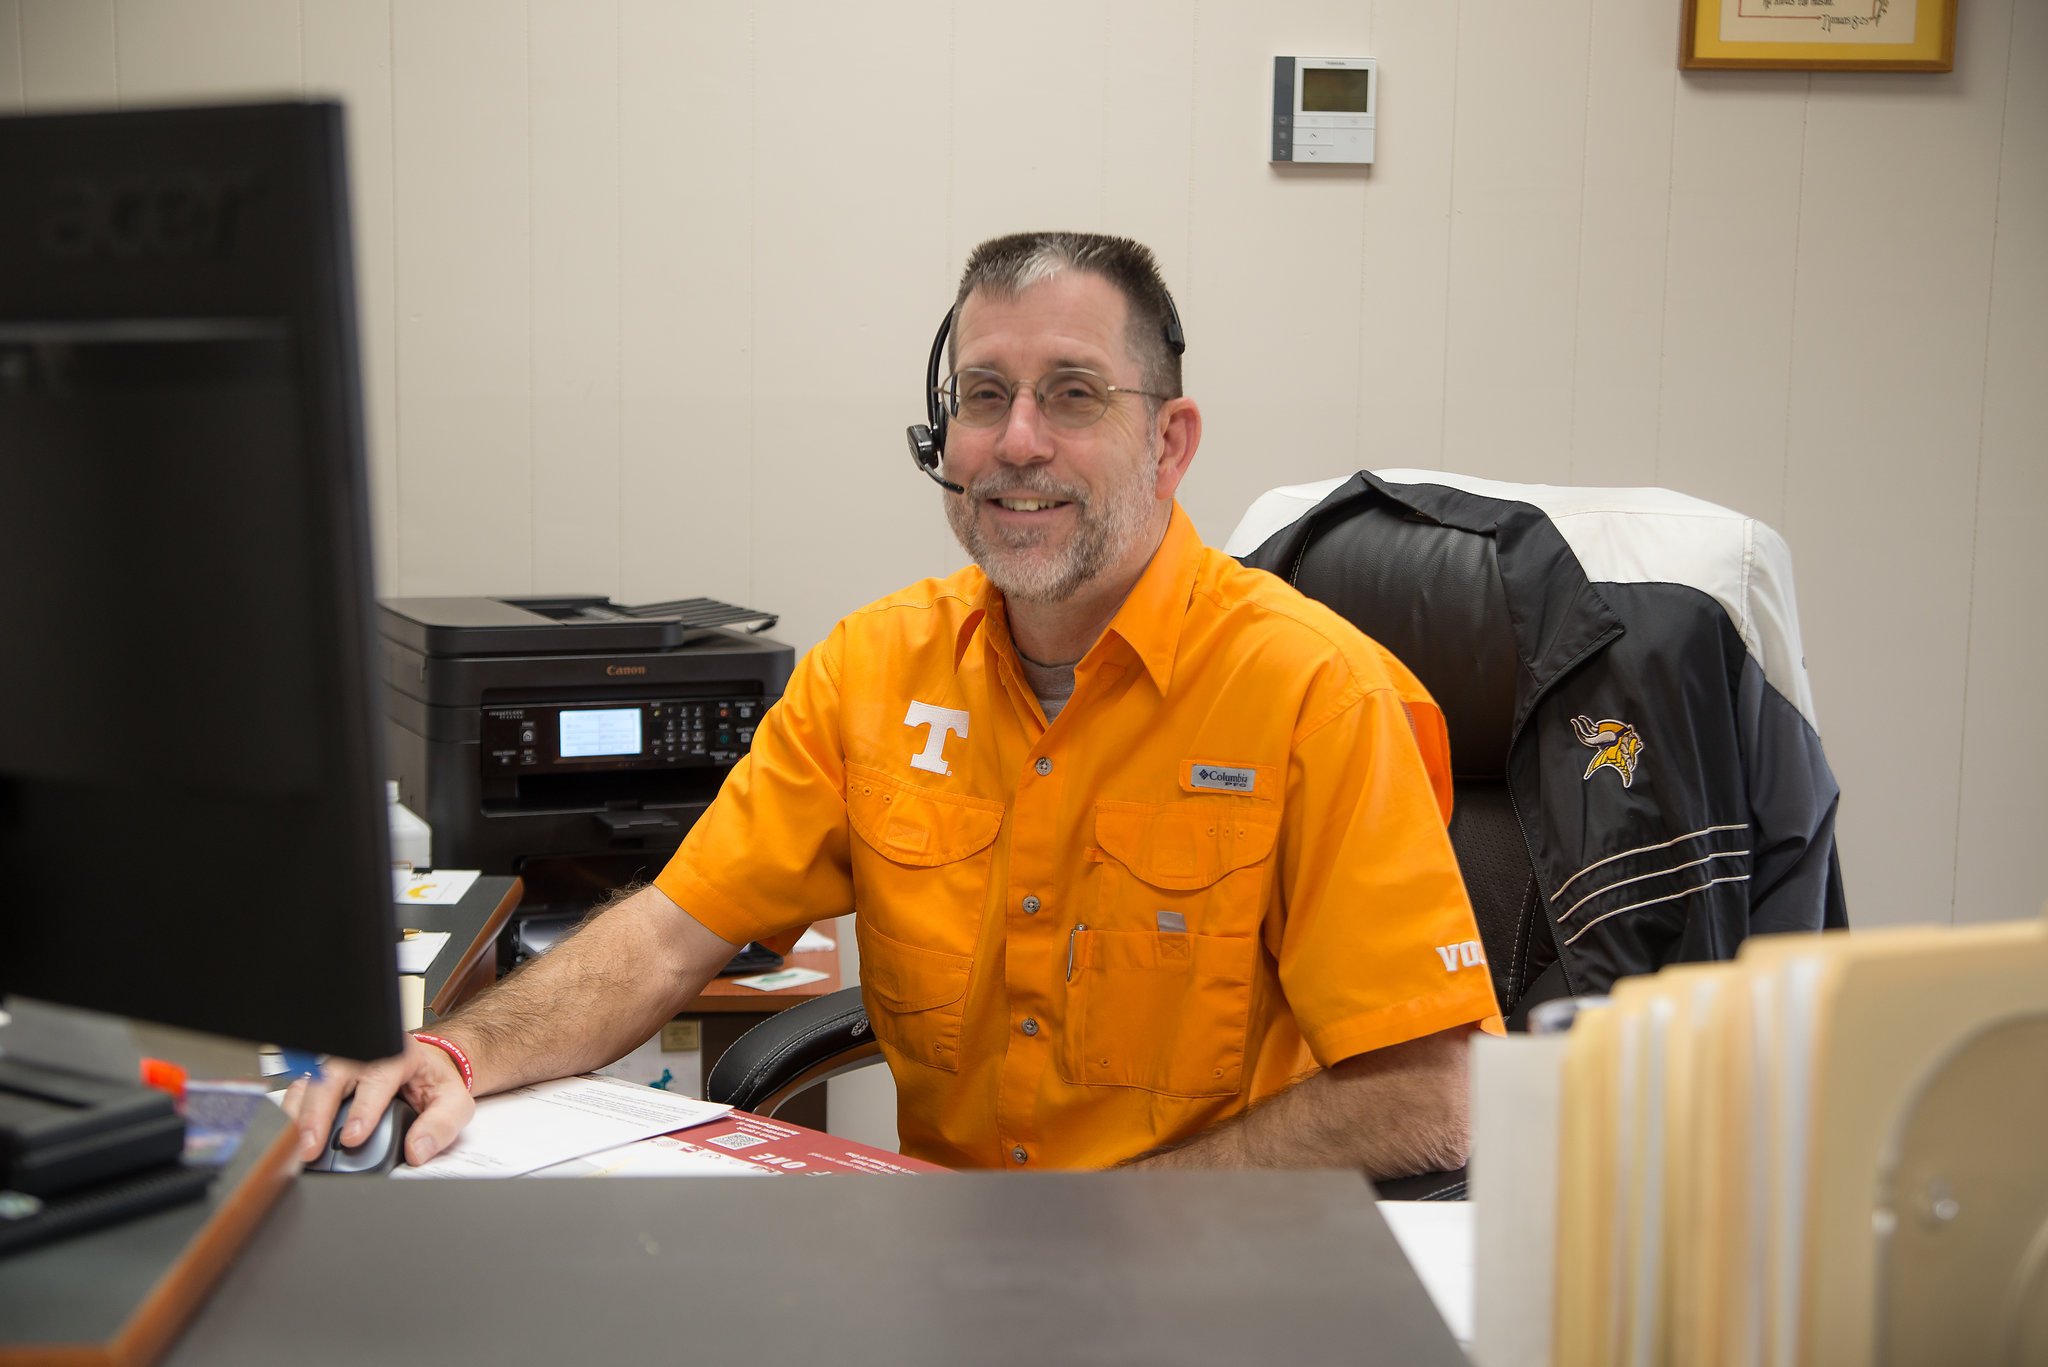 Man in orange smiling while sitting at computer